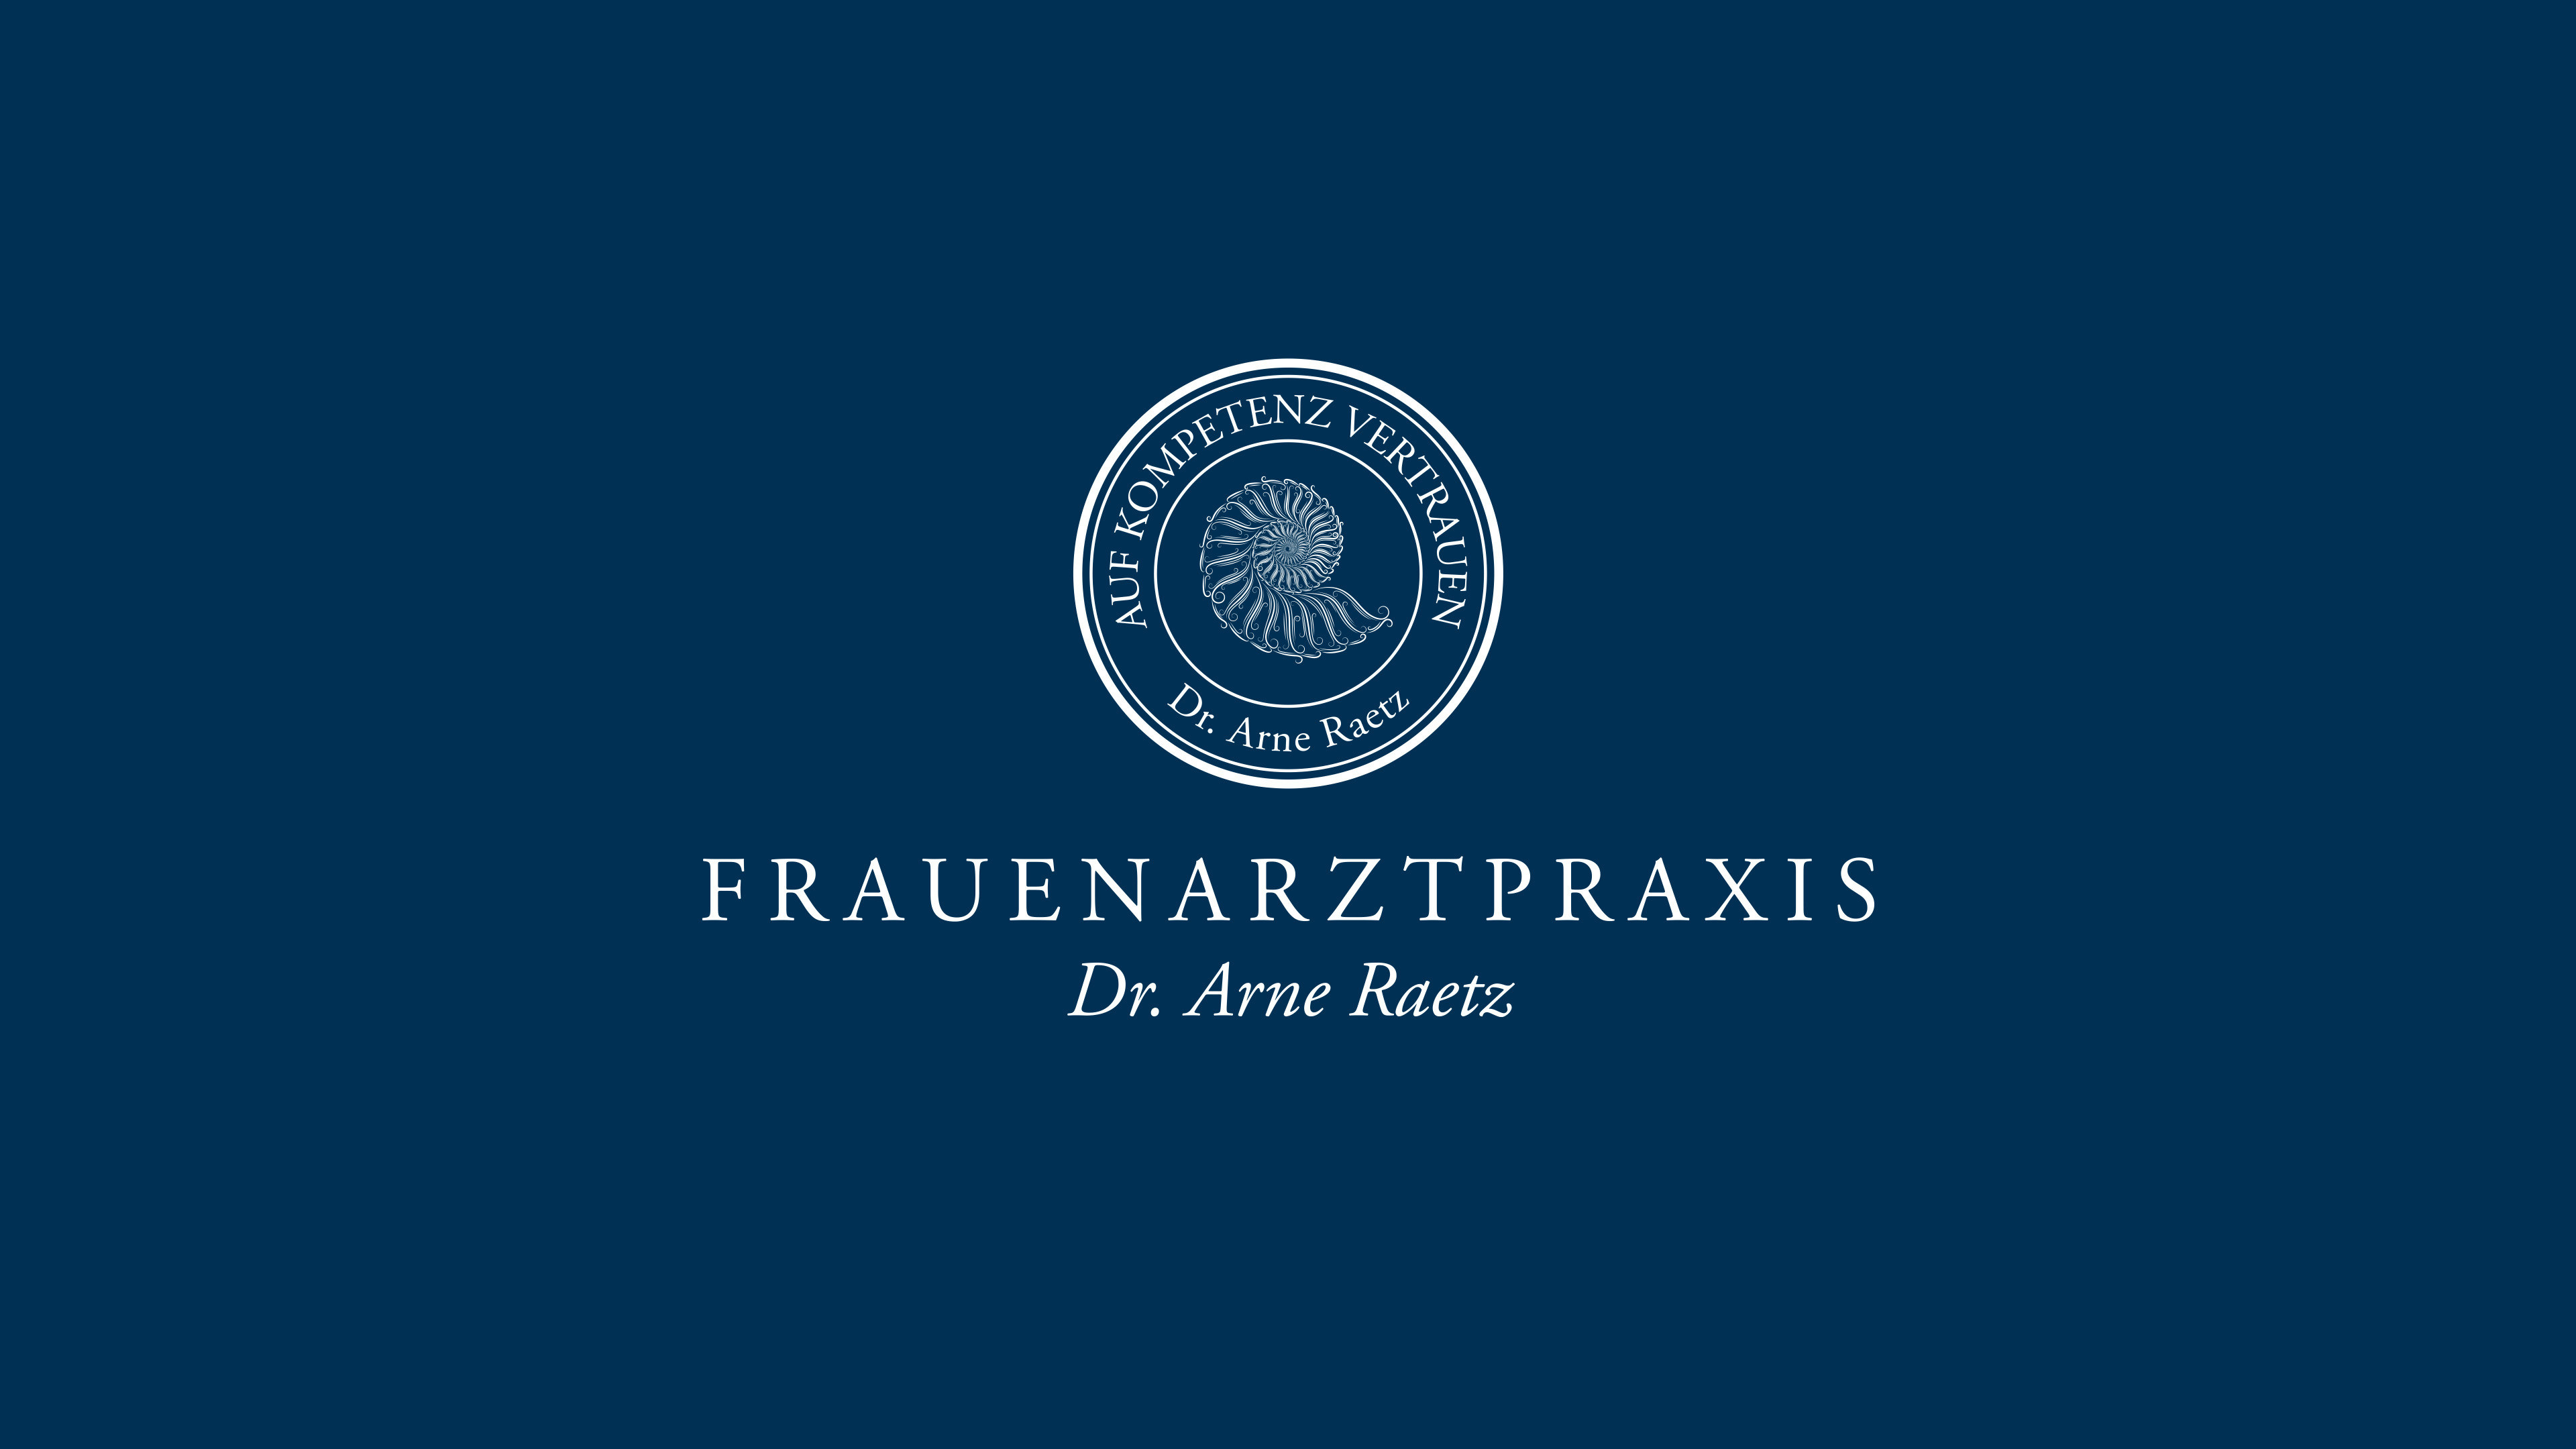 Logo und Text "Frauenarztpraxis Dr. Arne Raetz" vor dunkelblauem Hintergrund